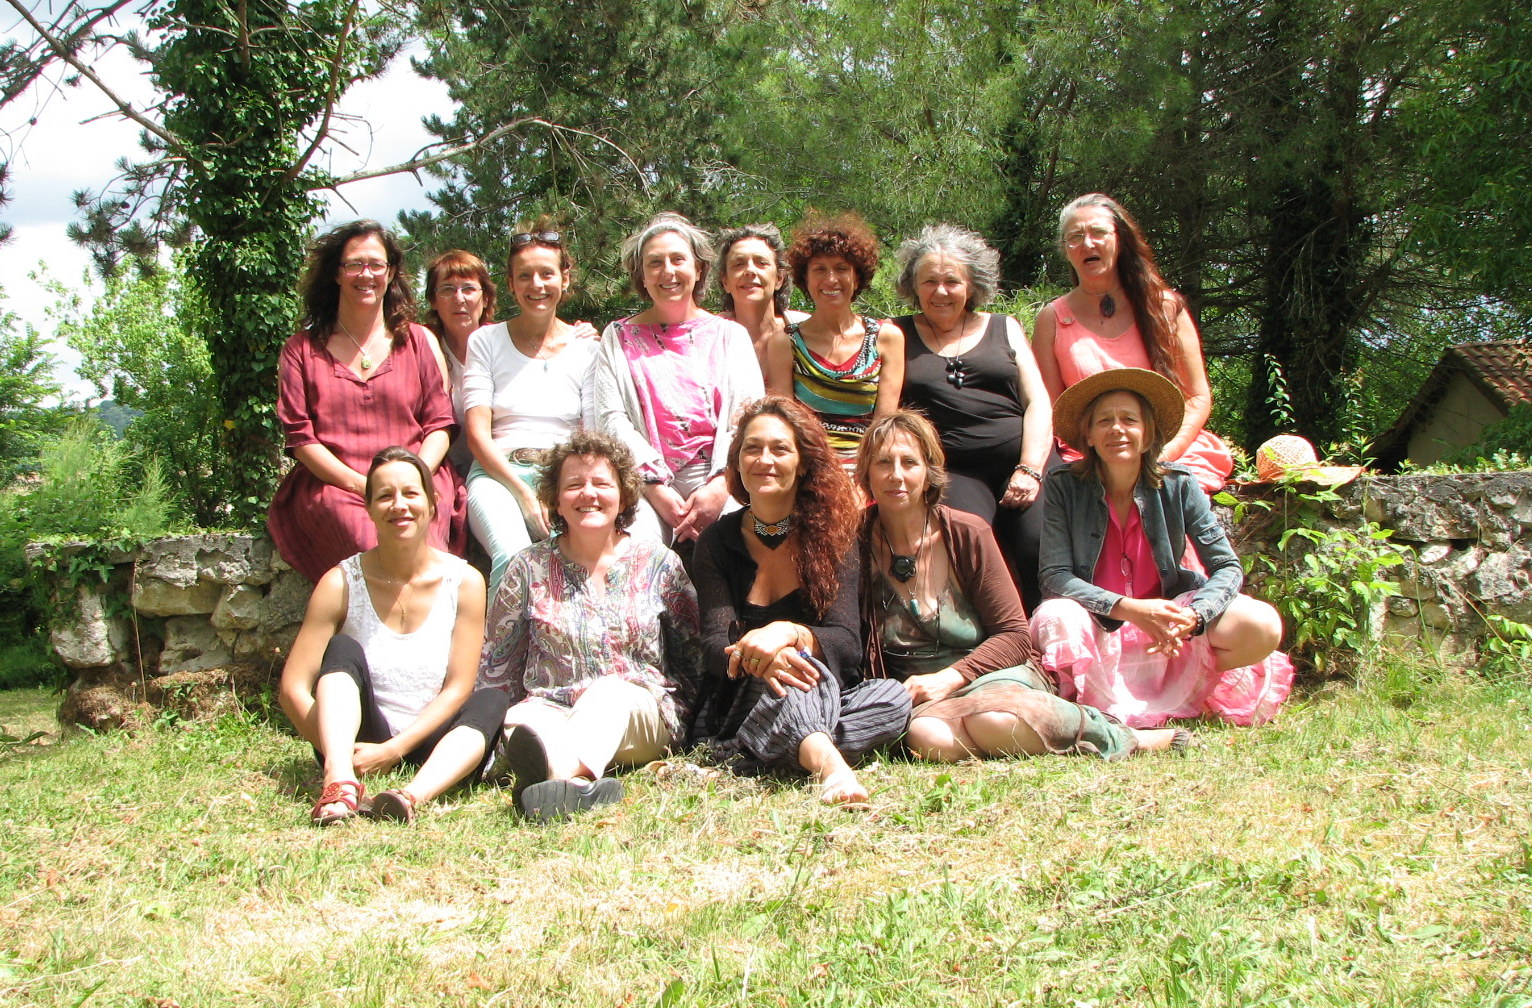 Festival du Féminin Dordogne Source des Femmes